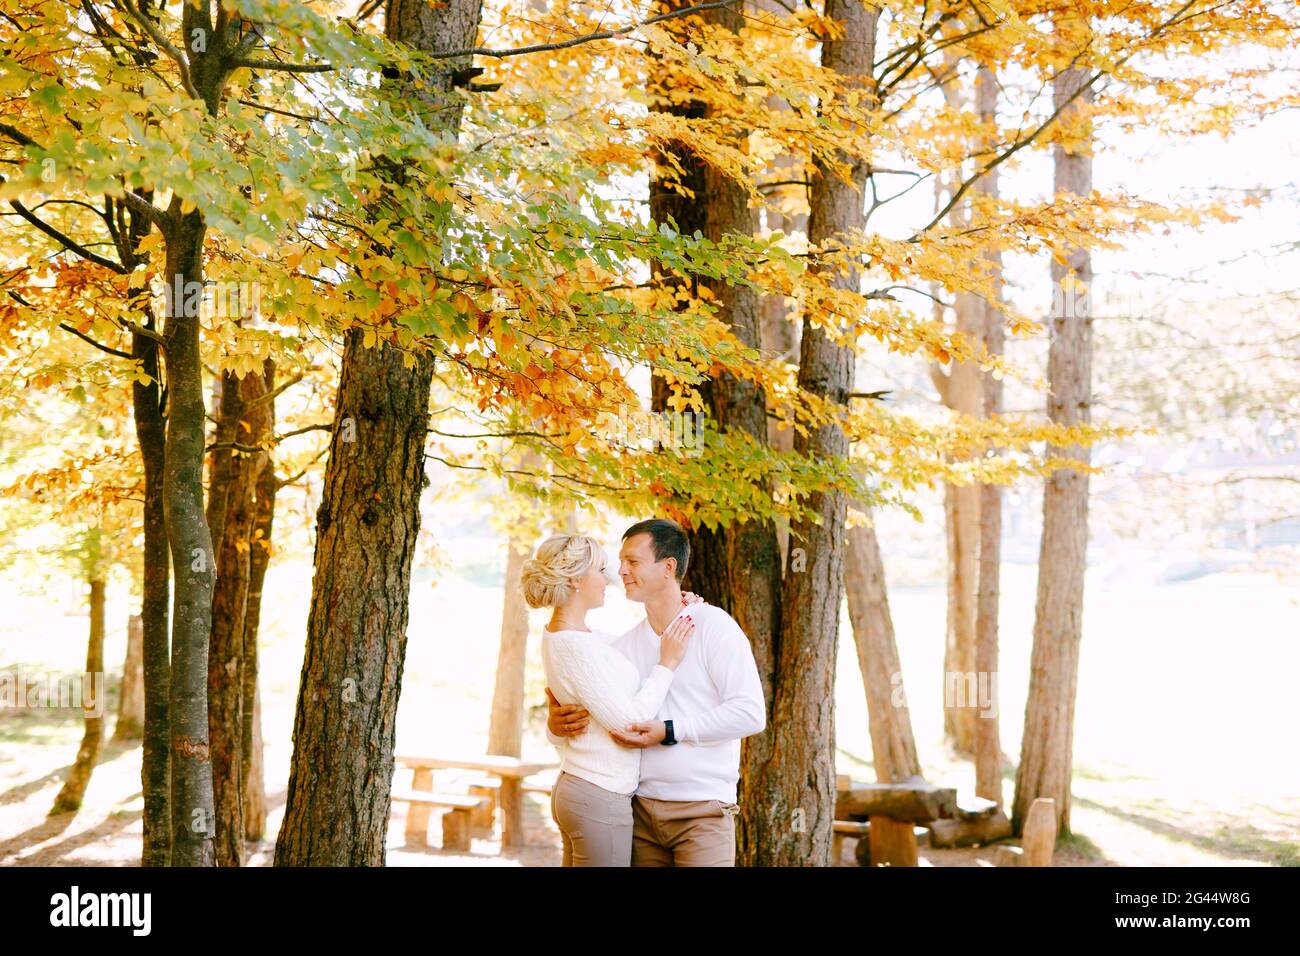 Mann und Frau in weißen Pullovern, die sich auf einem Hintergrund umarmen Von gelben und roten Blättern im Herbstwald Stockfoto